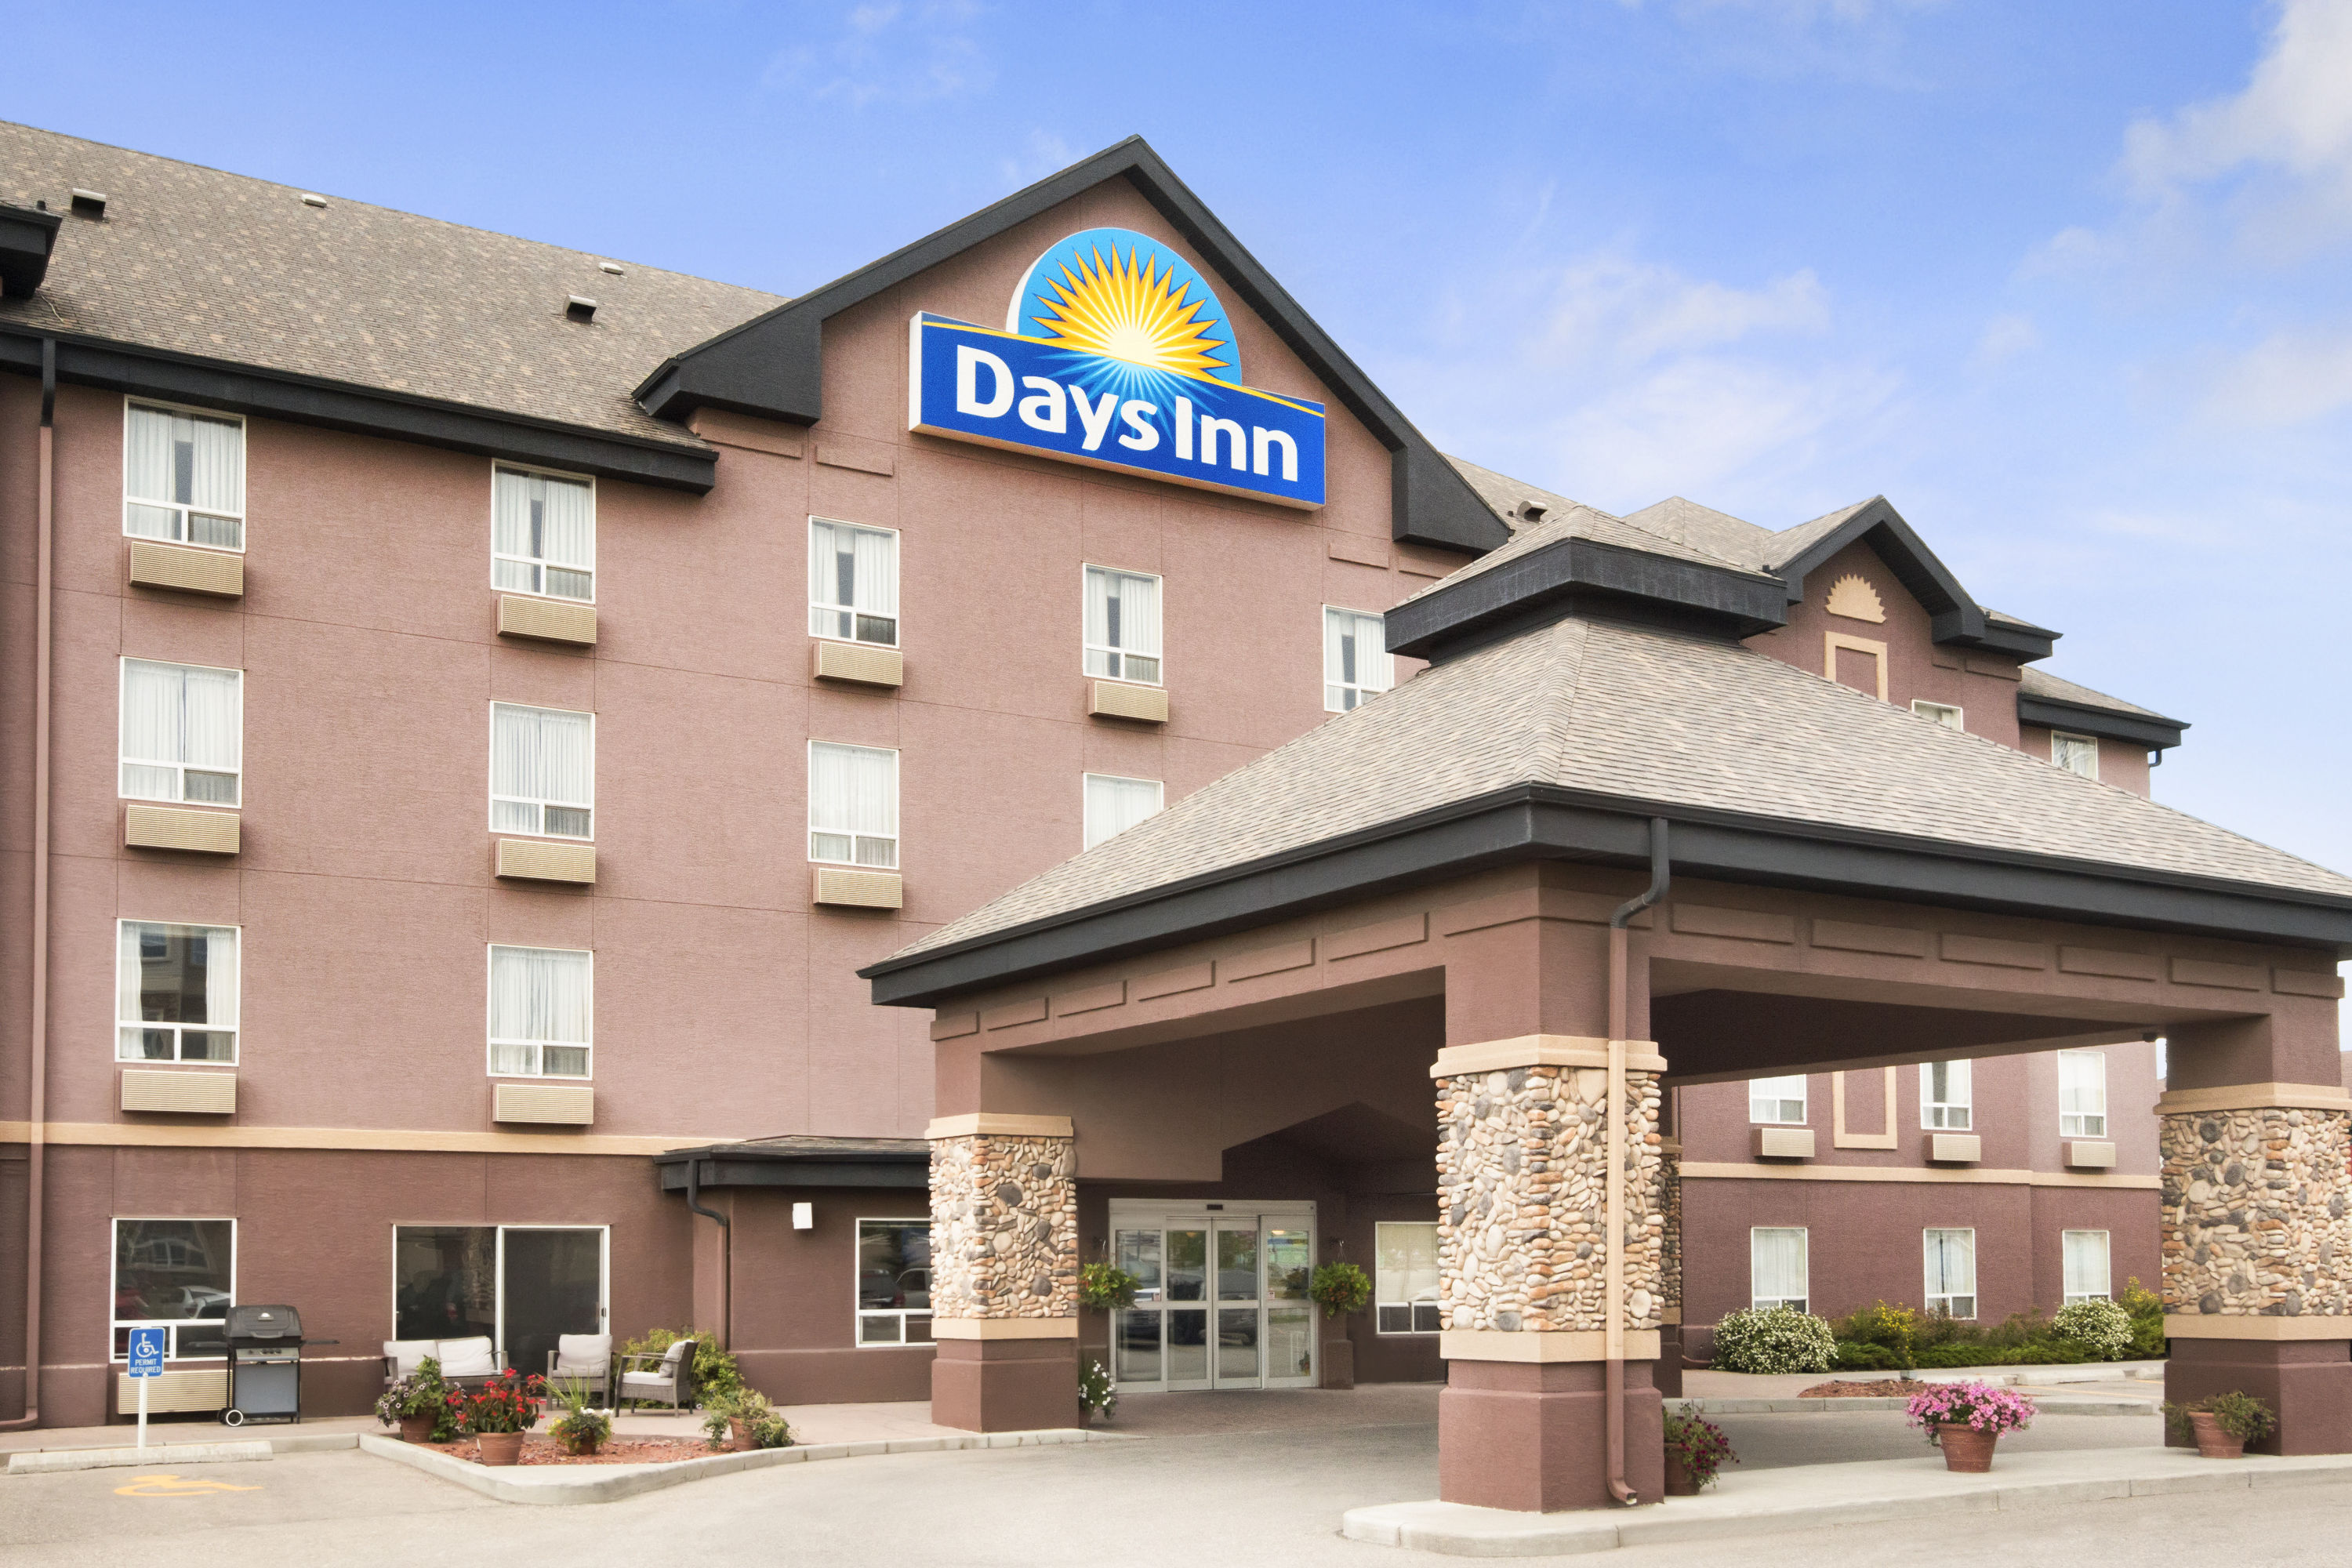 Days Inn by Wyndham Calgary Airport | Calgary, AB Hotels